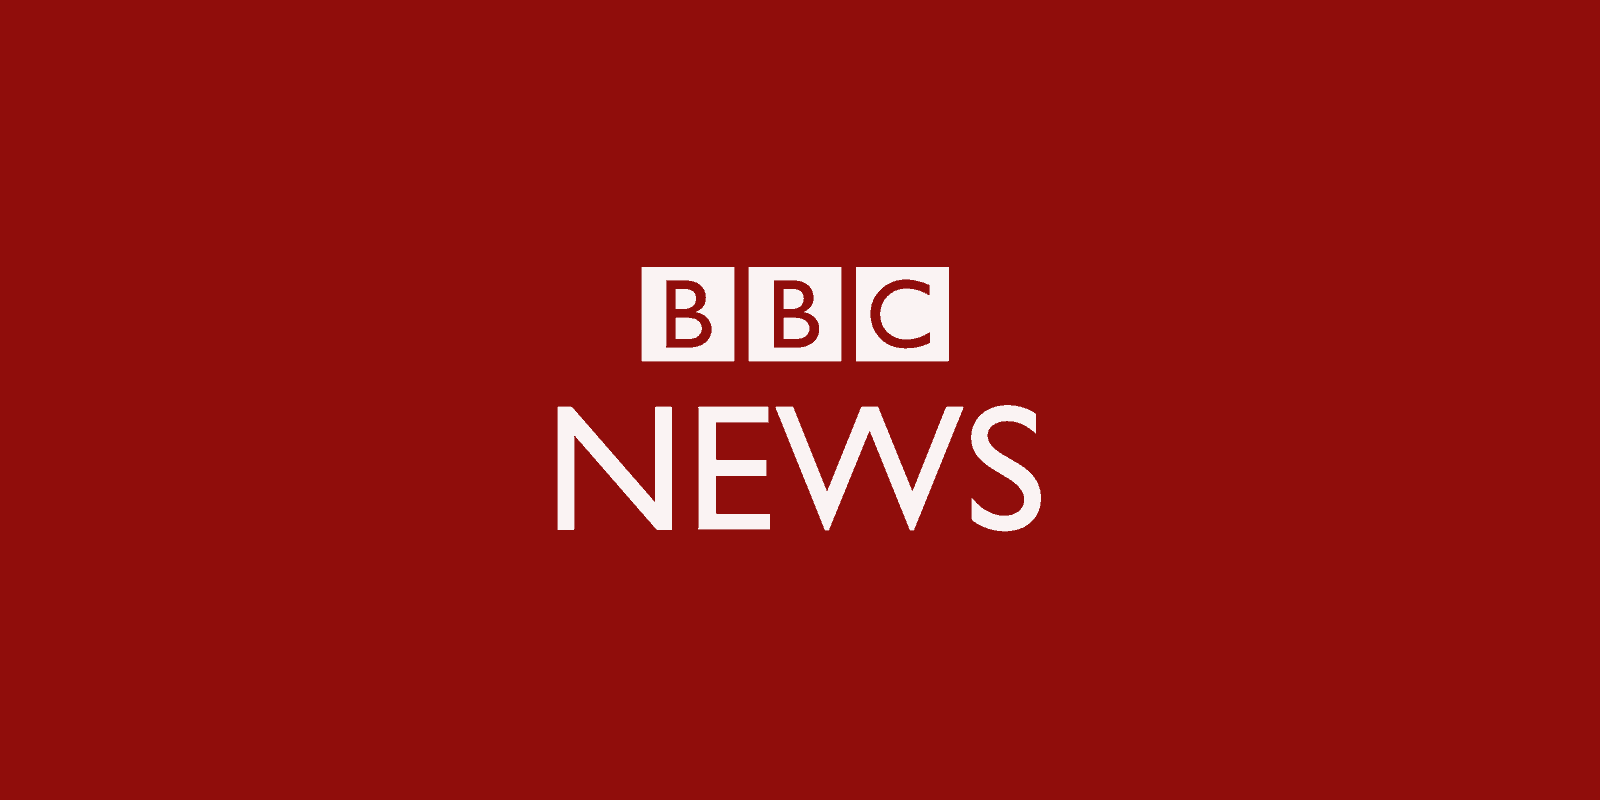 BBC Essex News: Drug dealer who recruited children is jailed